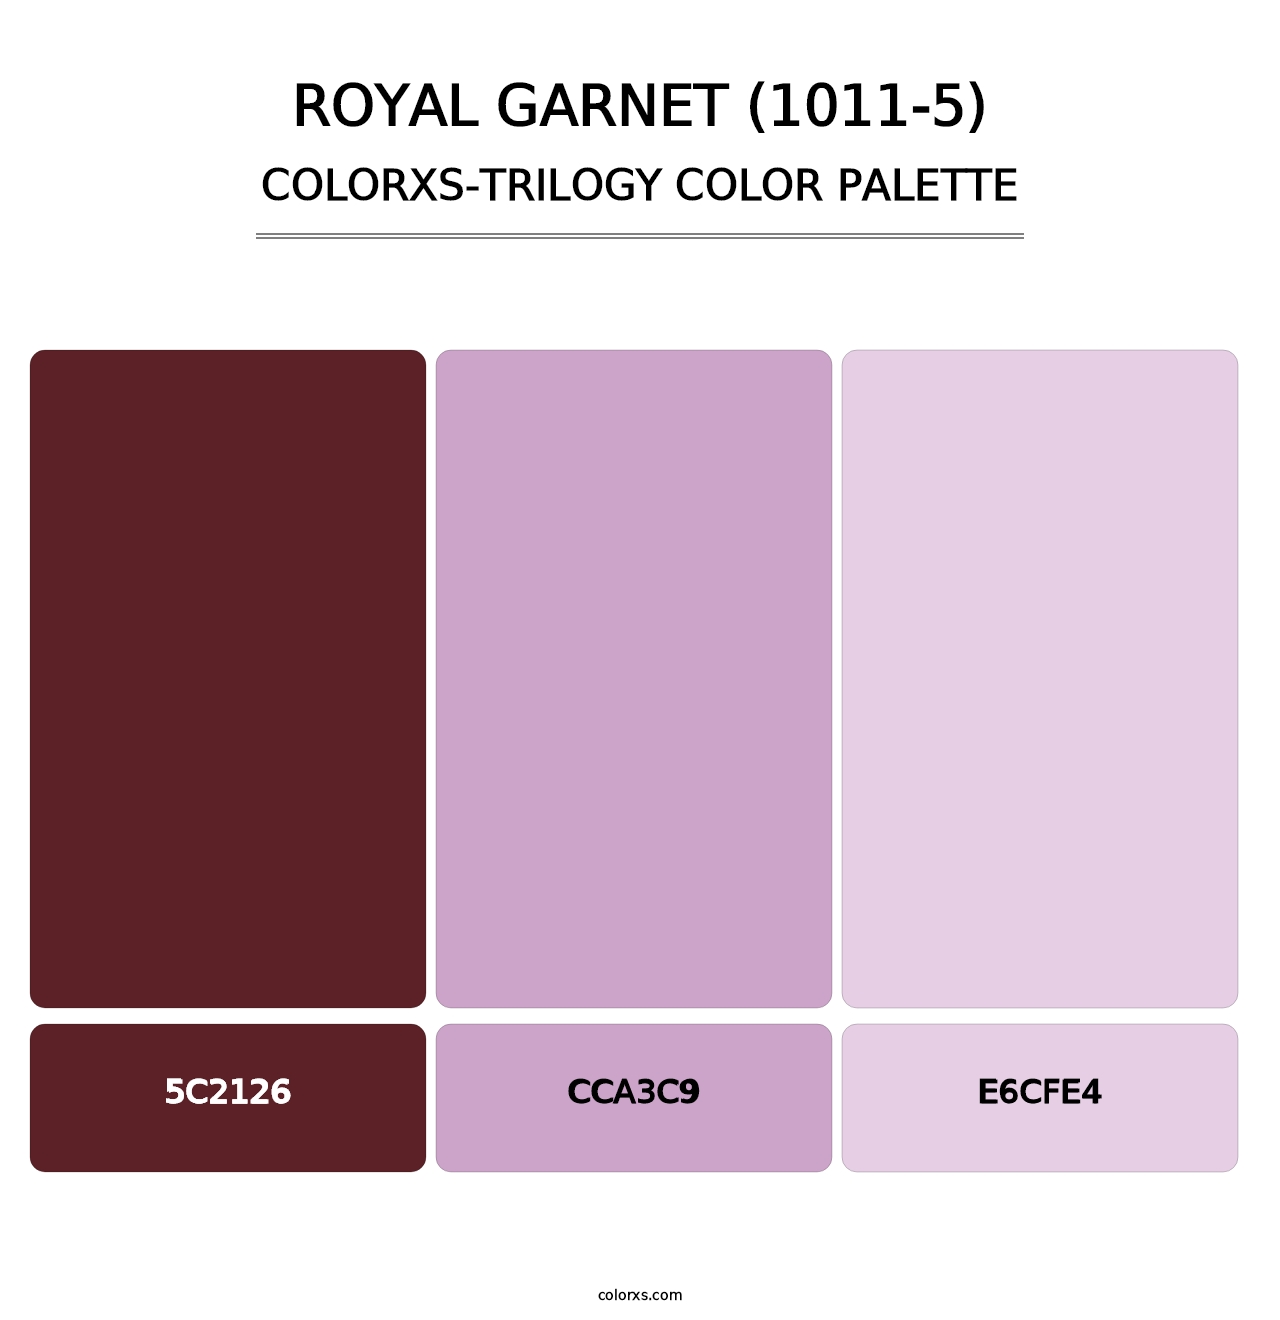 Royal Garnet (1011-5) - Colorxs Trilogy Palette